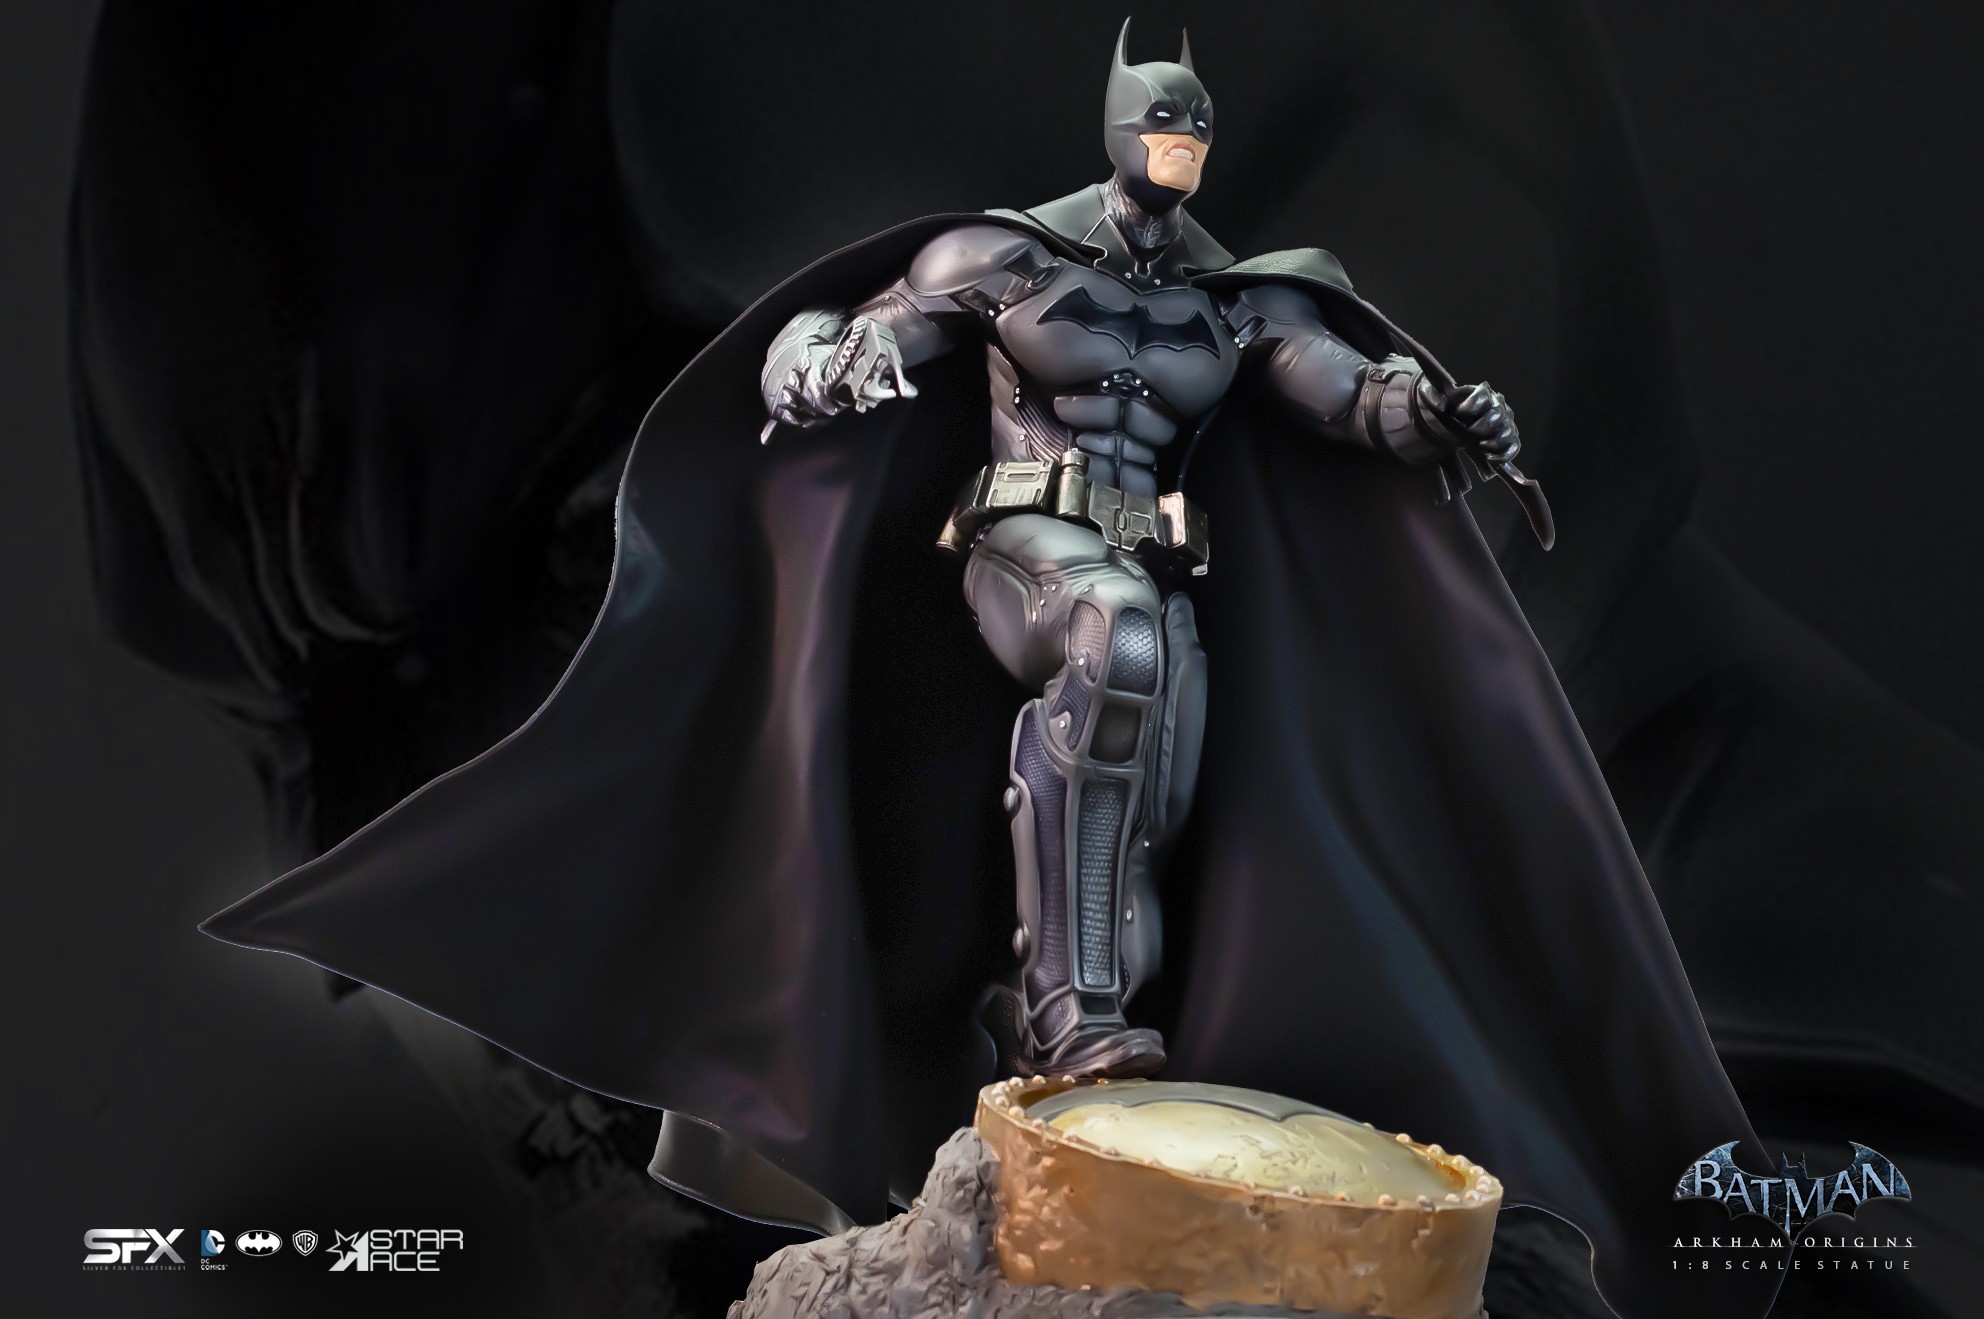 Batman Arkham Origins 2.0 Deluxe (Prototype Shown) View 14